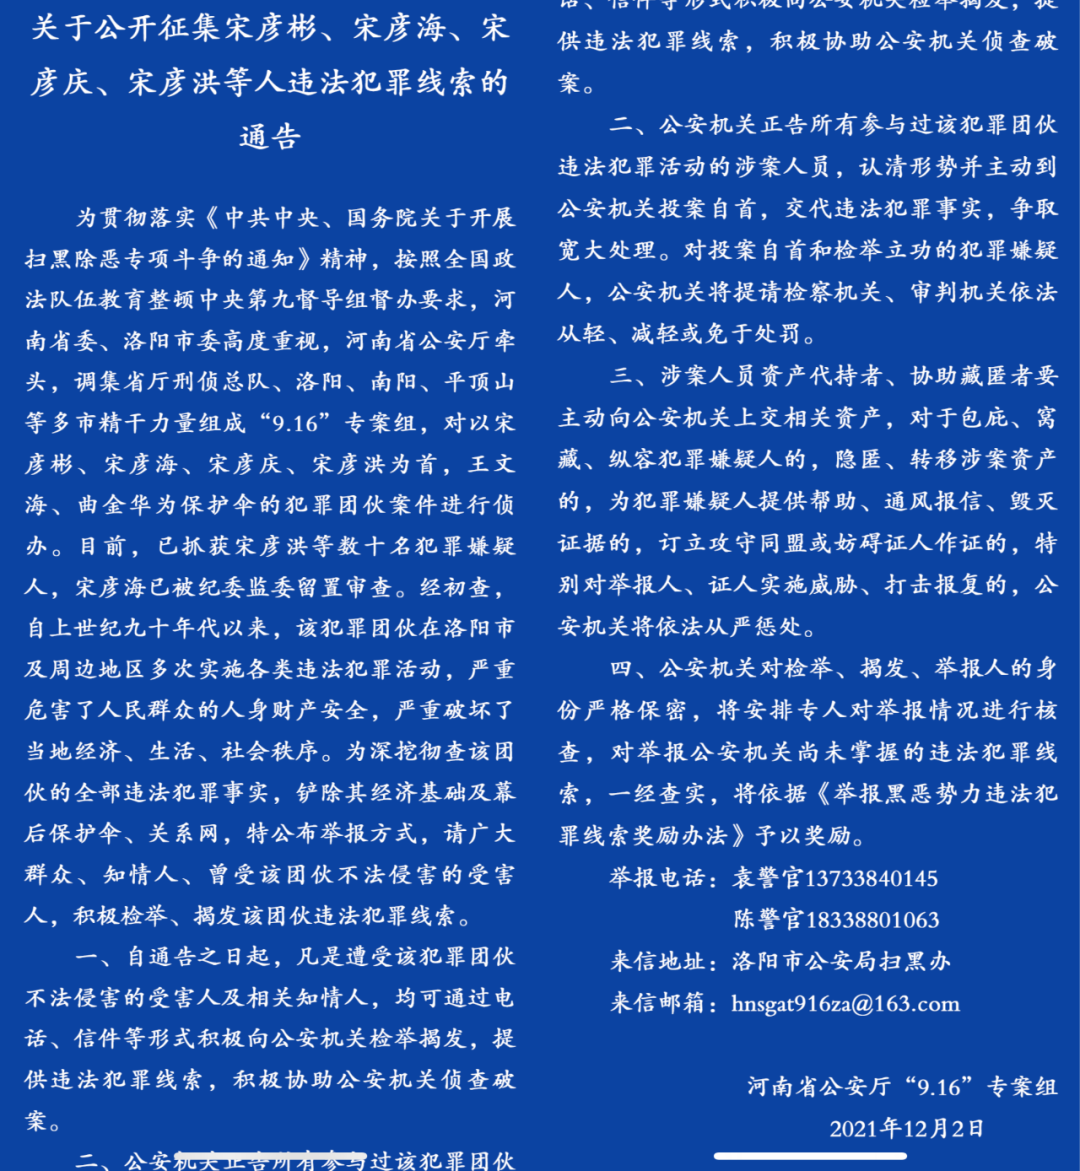 河南省公安厅“9•16”专案组的《通告》